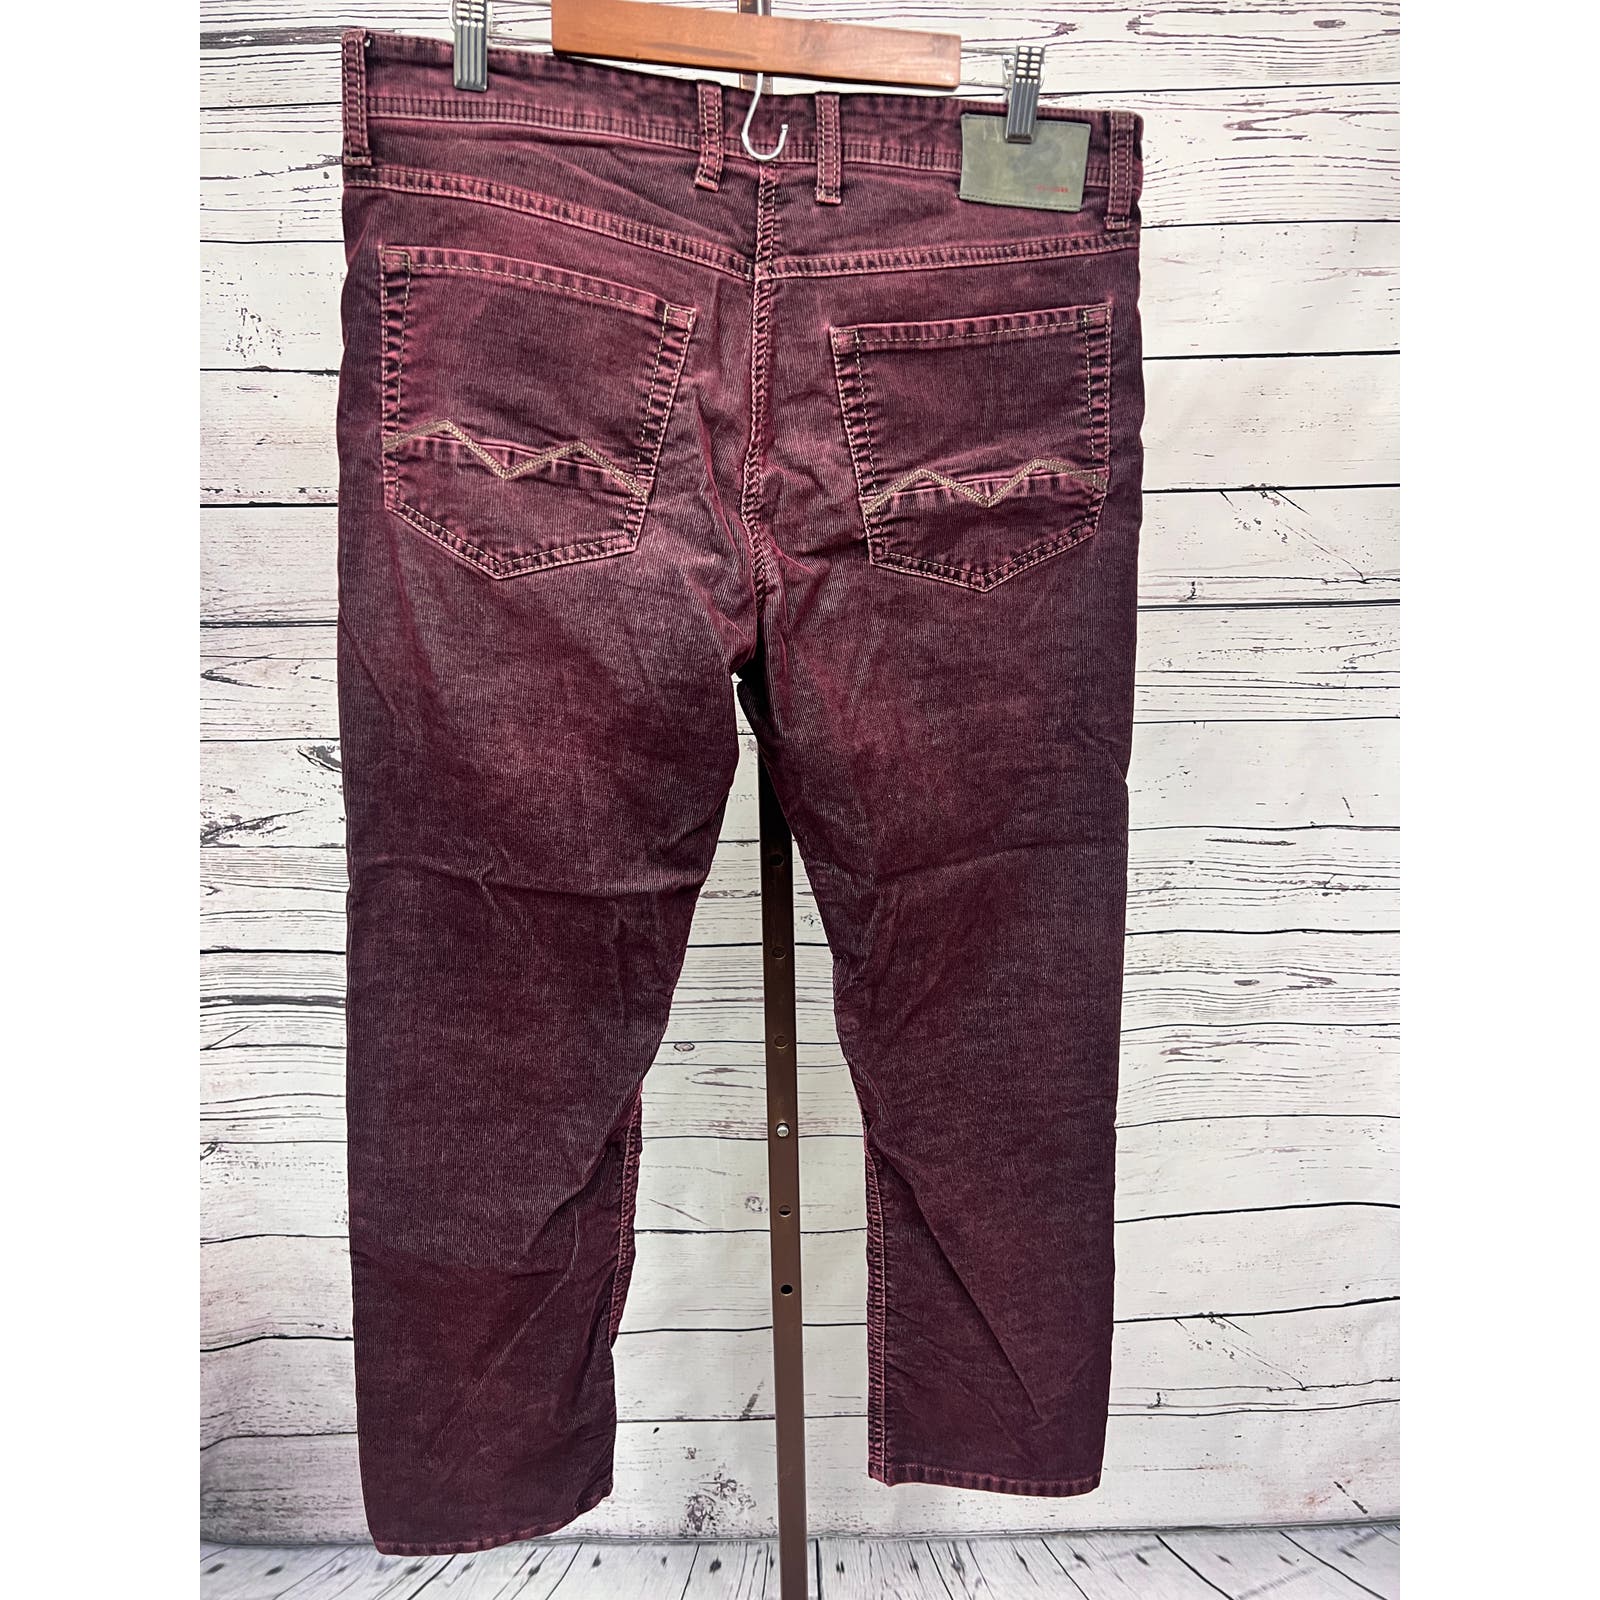 MAC Jeans Arne Pipe Corduroy Pants Mens 35x29 Stretch Maroon Vintage Wash